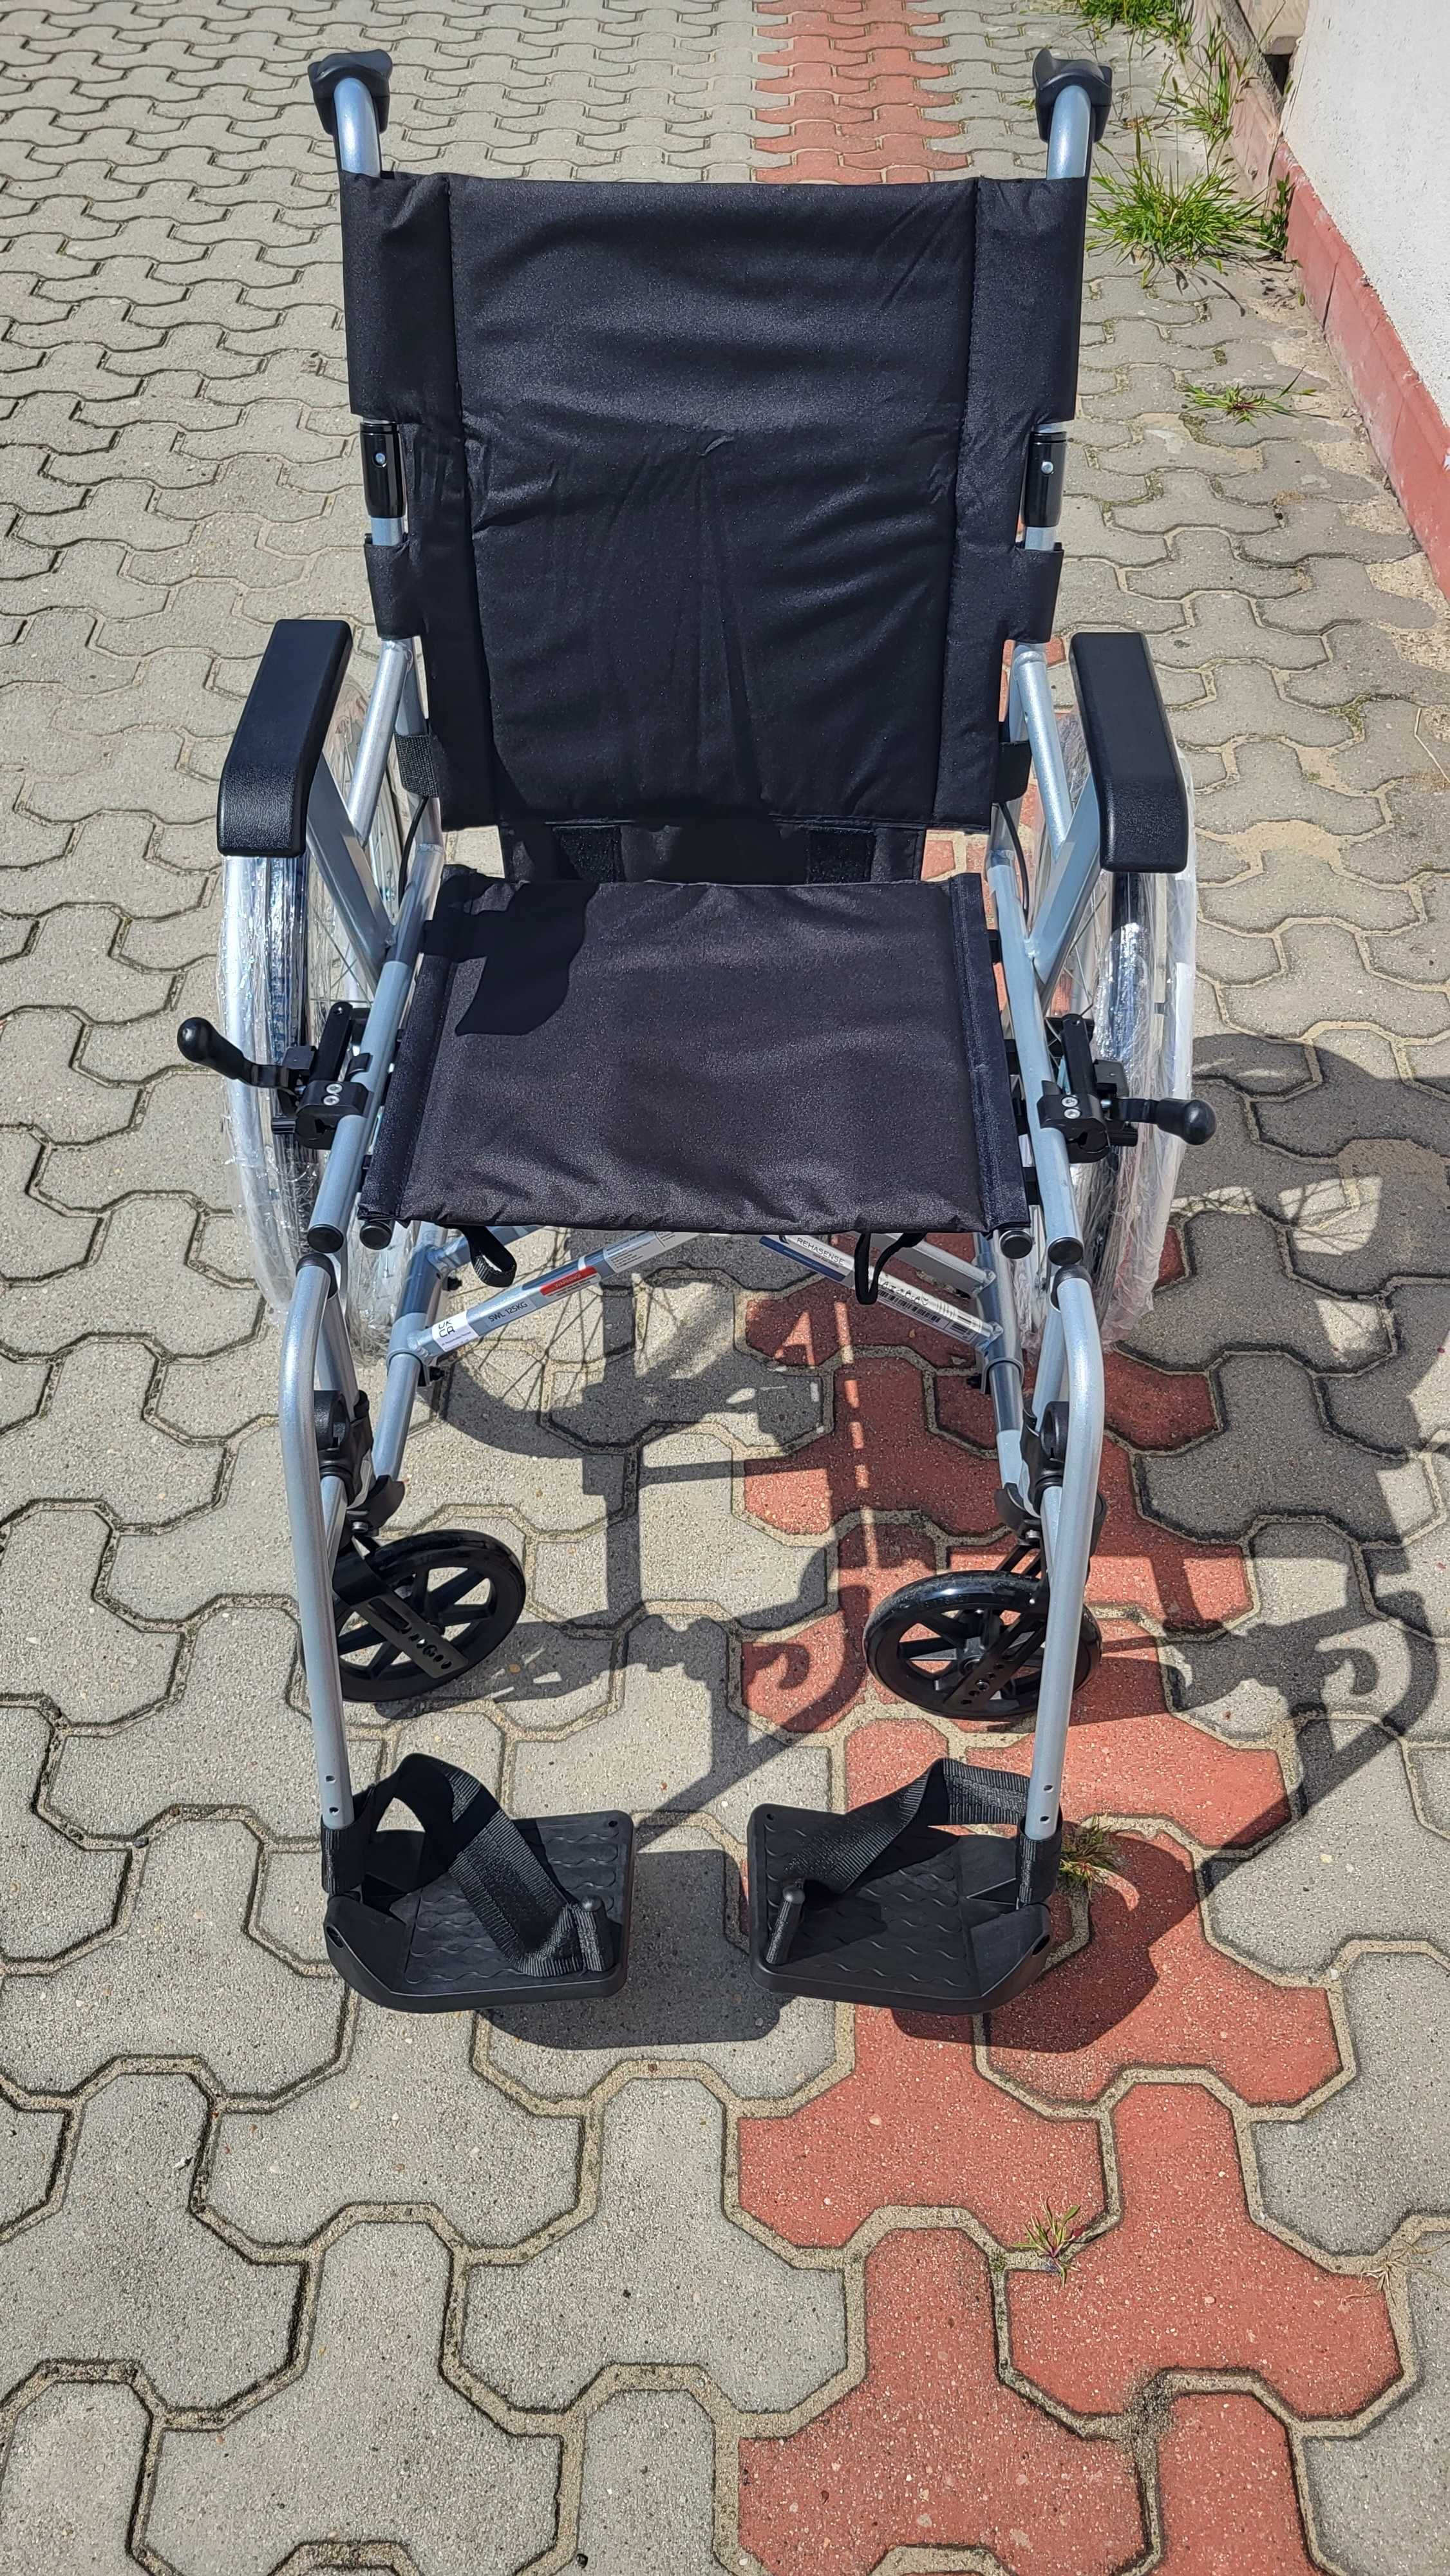 Wózek inwalidzki Rehasense Icon 35 BX dofinansowanie NFZ, REFUNDACJA!